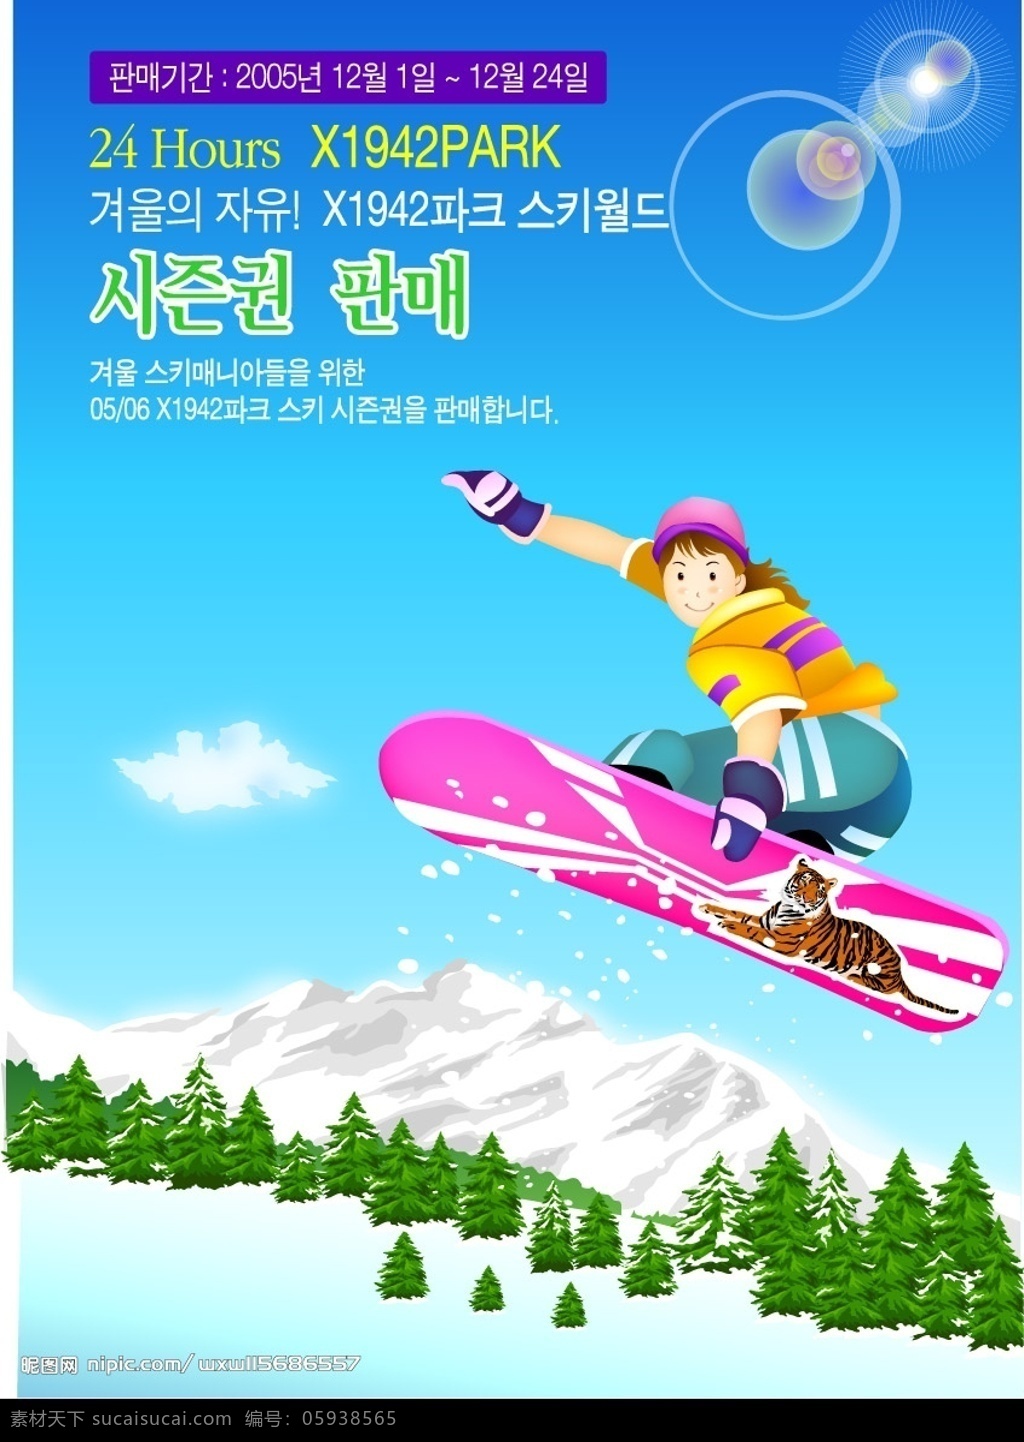 冬季 滑雪 运动 人物 矢量 生活 旅游矢量 矢量人物 日常生活 生活人物 矢量图库 韩国 經婰